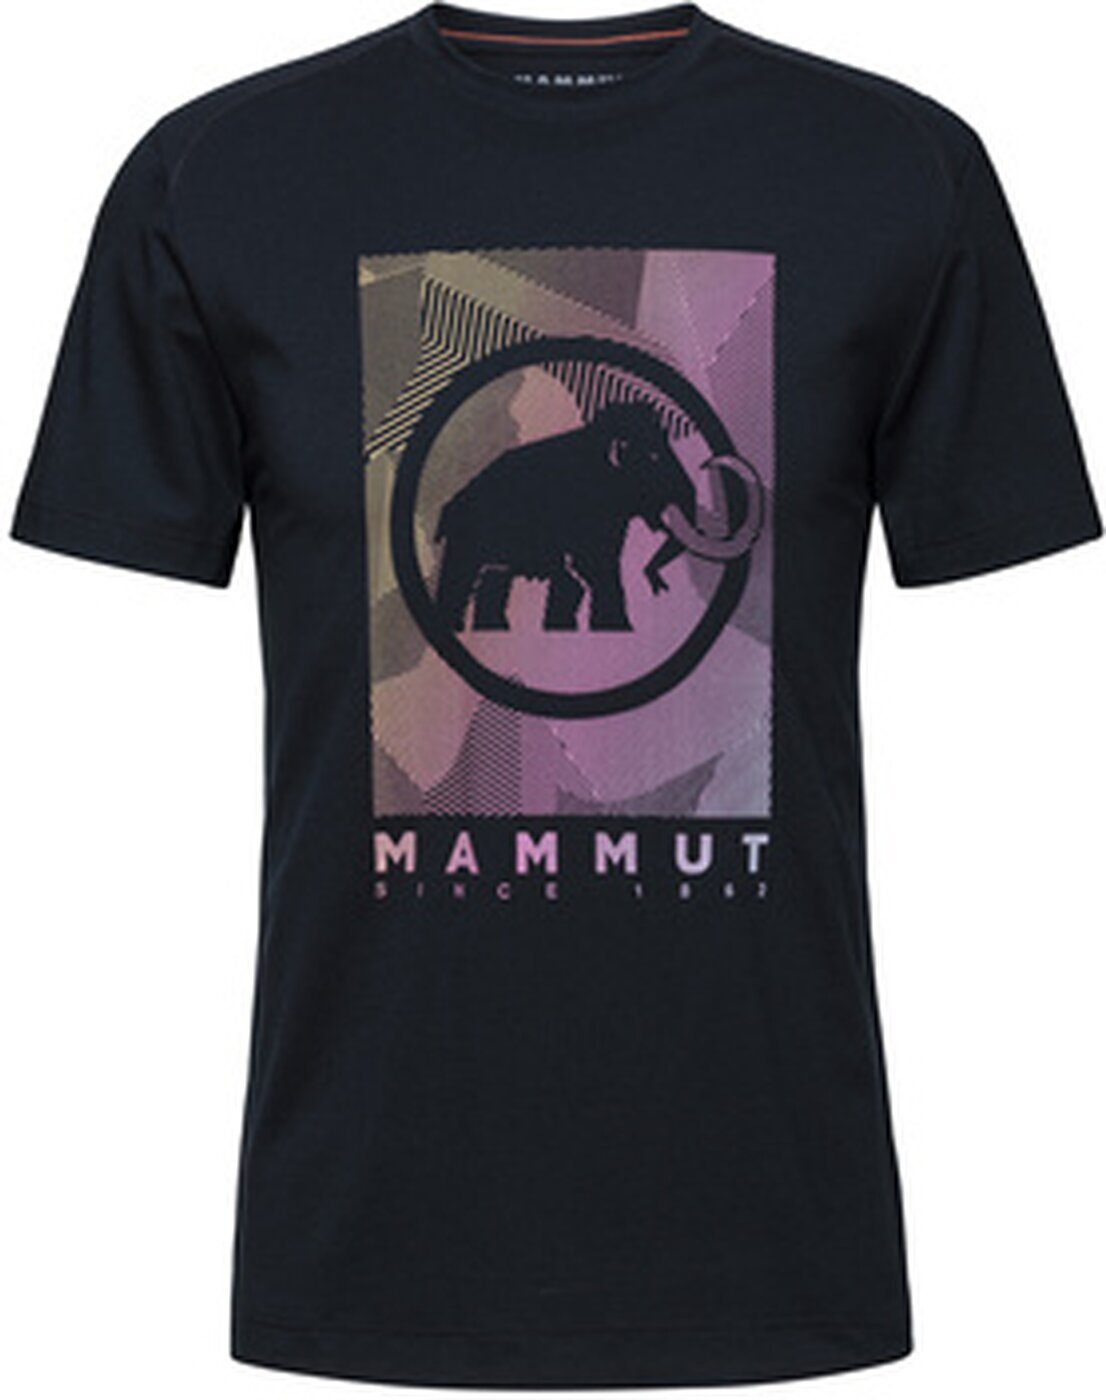 Mammut T-Shirt 00254 PRT2 black Shirt Trovat Mammut Herren